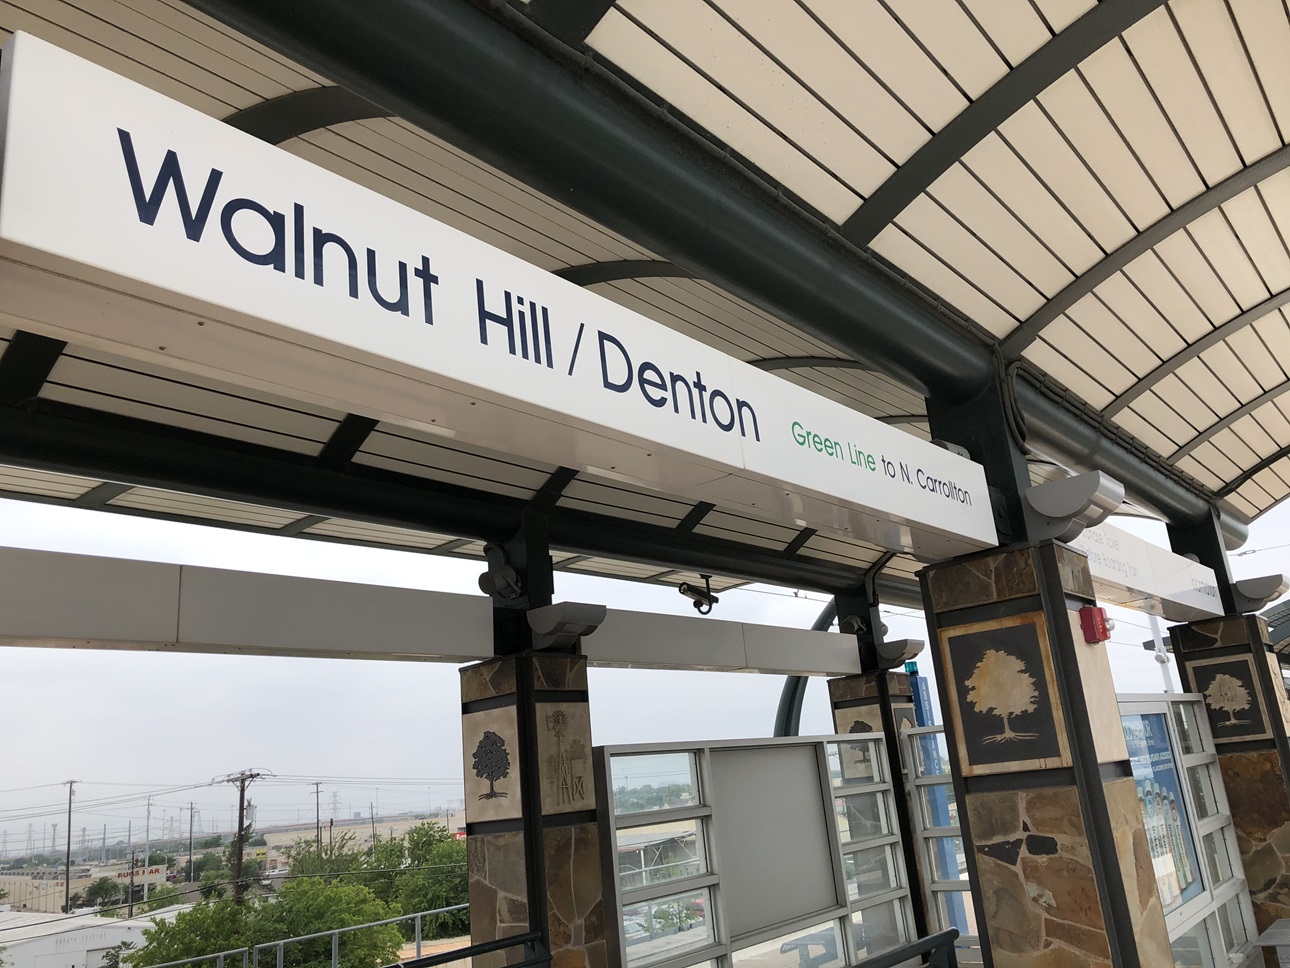 Estación de tren Walnut Hill / Denton, Dallas TX